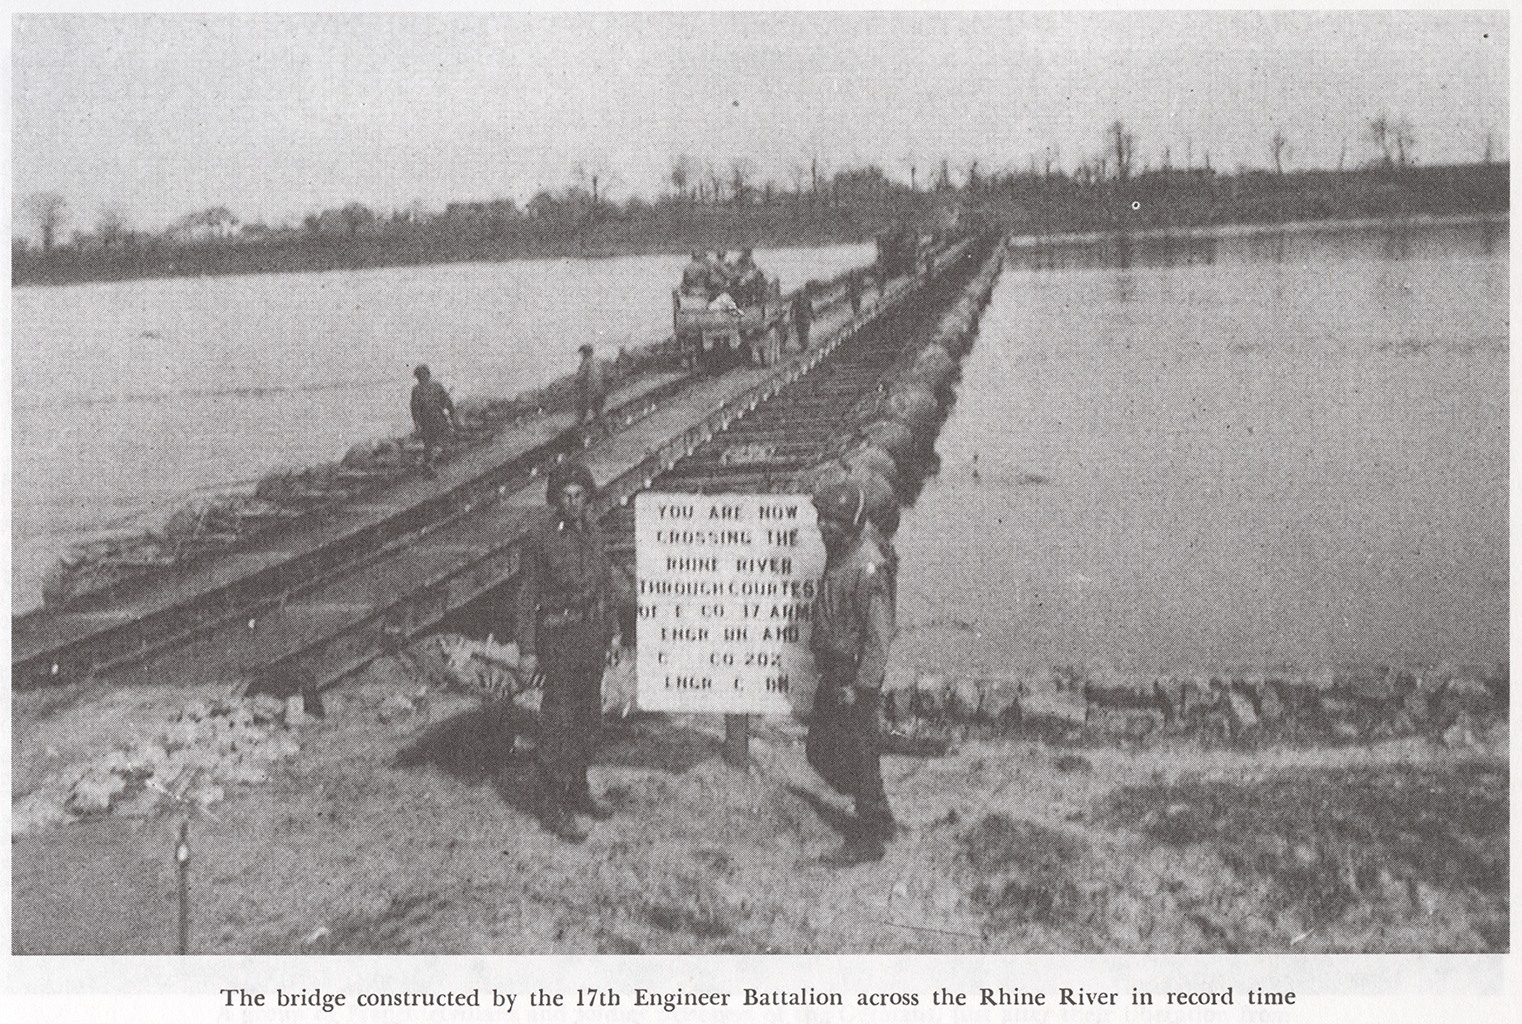 Bridge Rhine River 17th AEB in record time, Source: Unit History